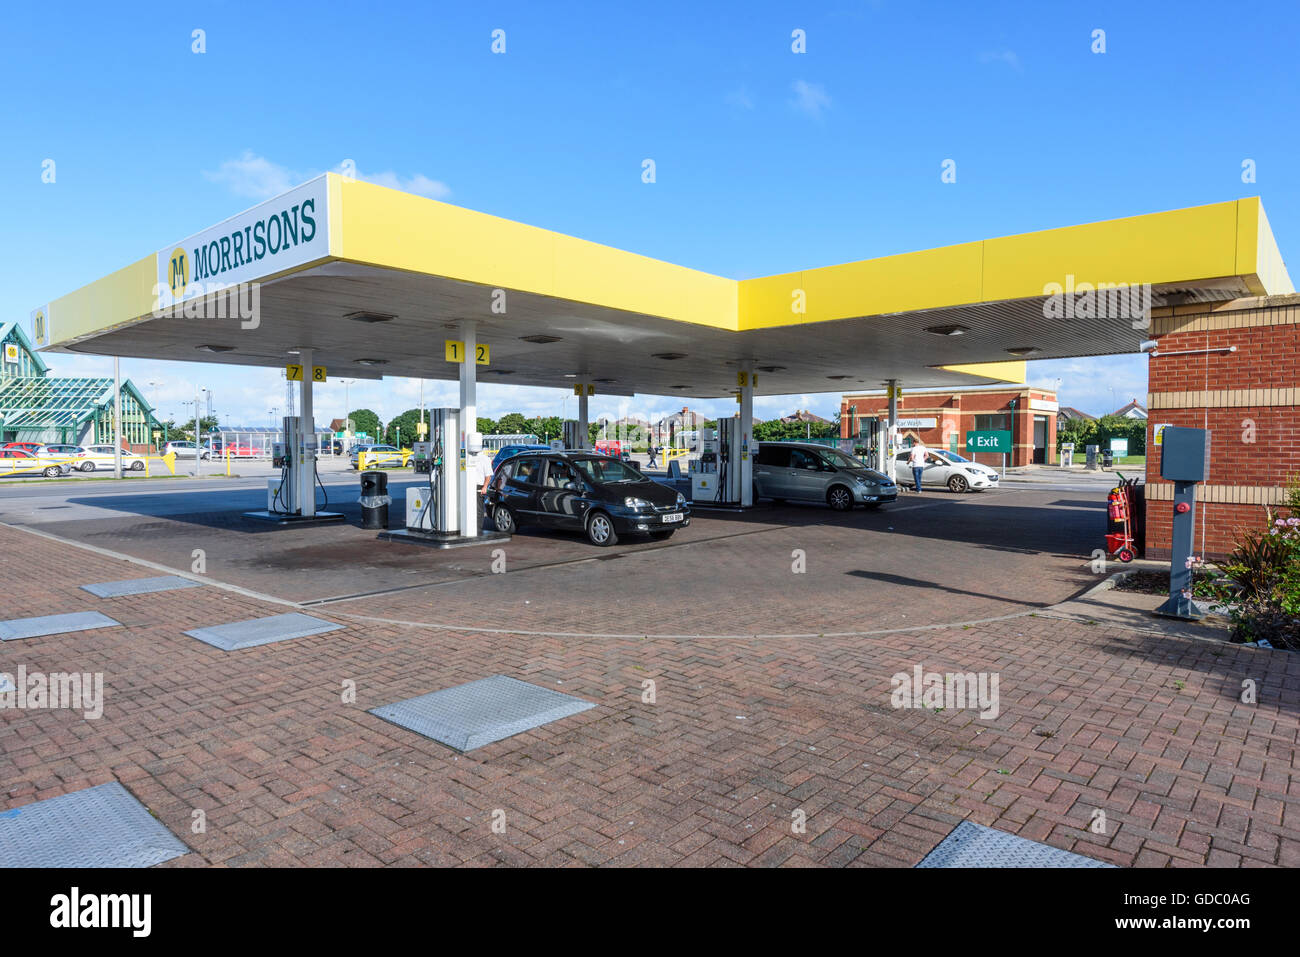 Voitures plein de carburant à une station essence de supermarché Morrisons dans Blackpool, Lancashire, UK Banque D'Images